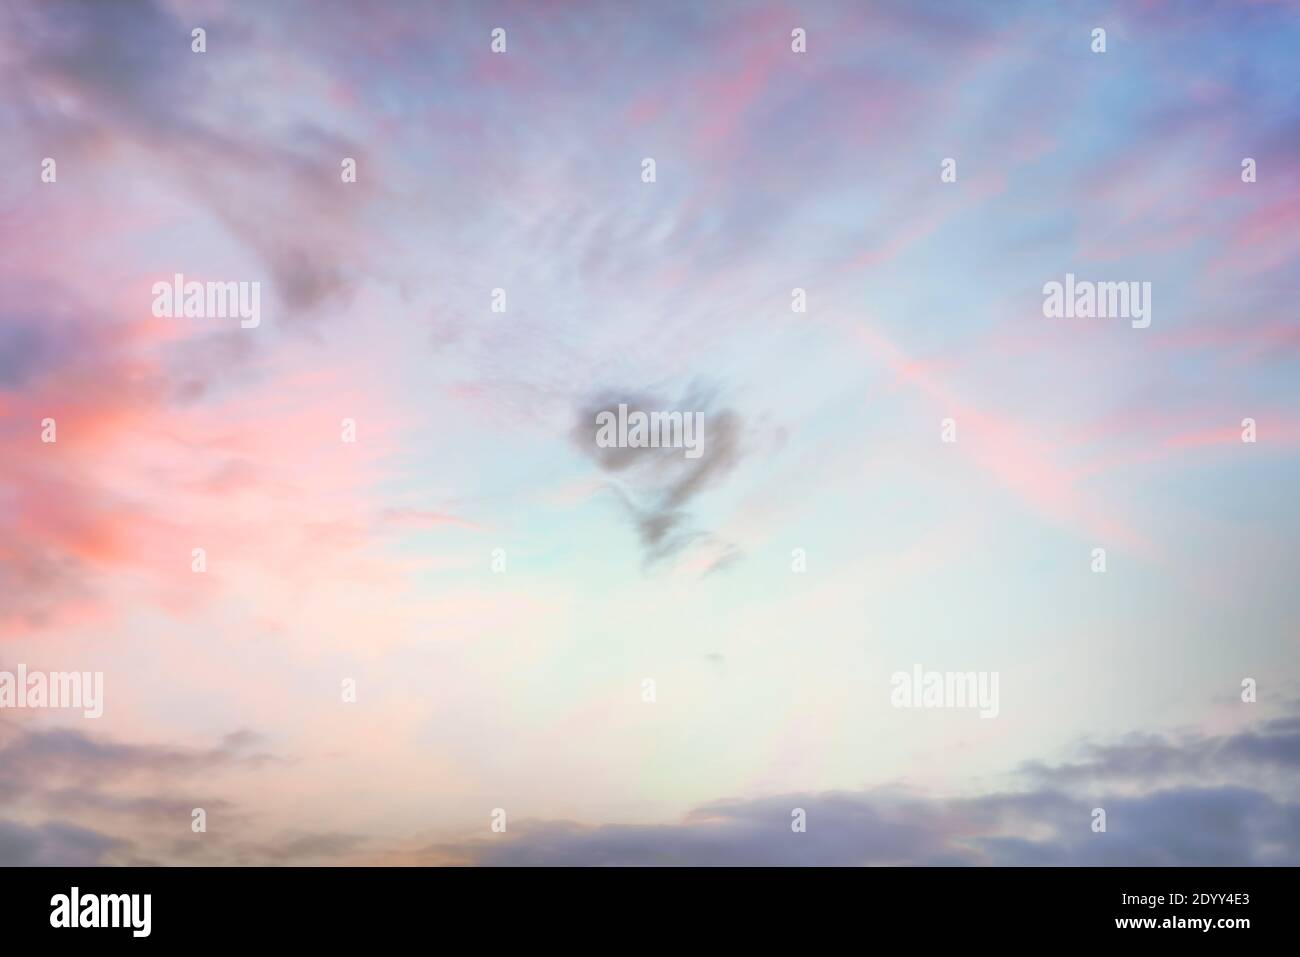 Herzförmige Wolke am Himmel bei Sonnenuntergang. Echte hochauflösende Fotografie Textur Hintergrund. Stockfoto